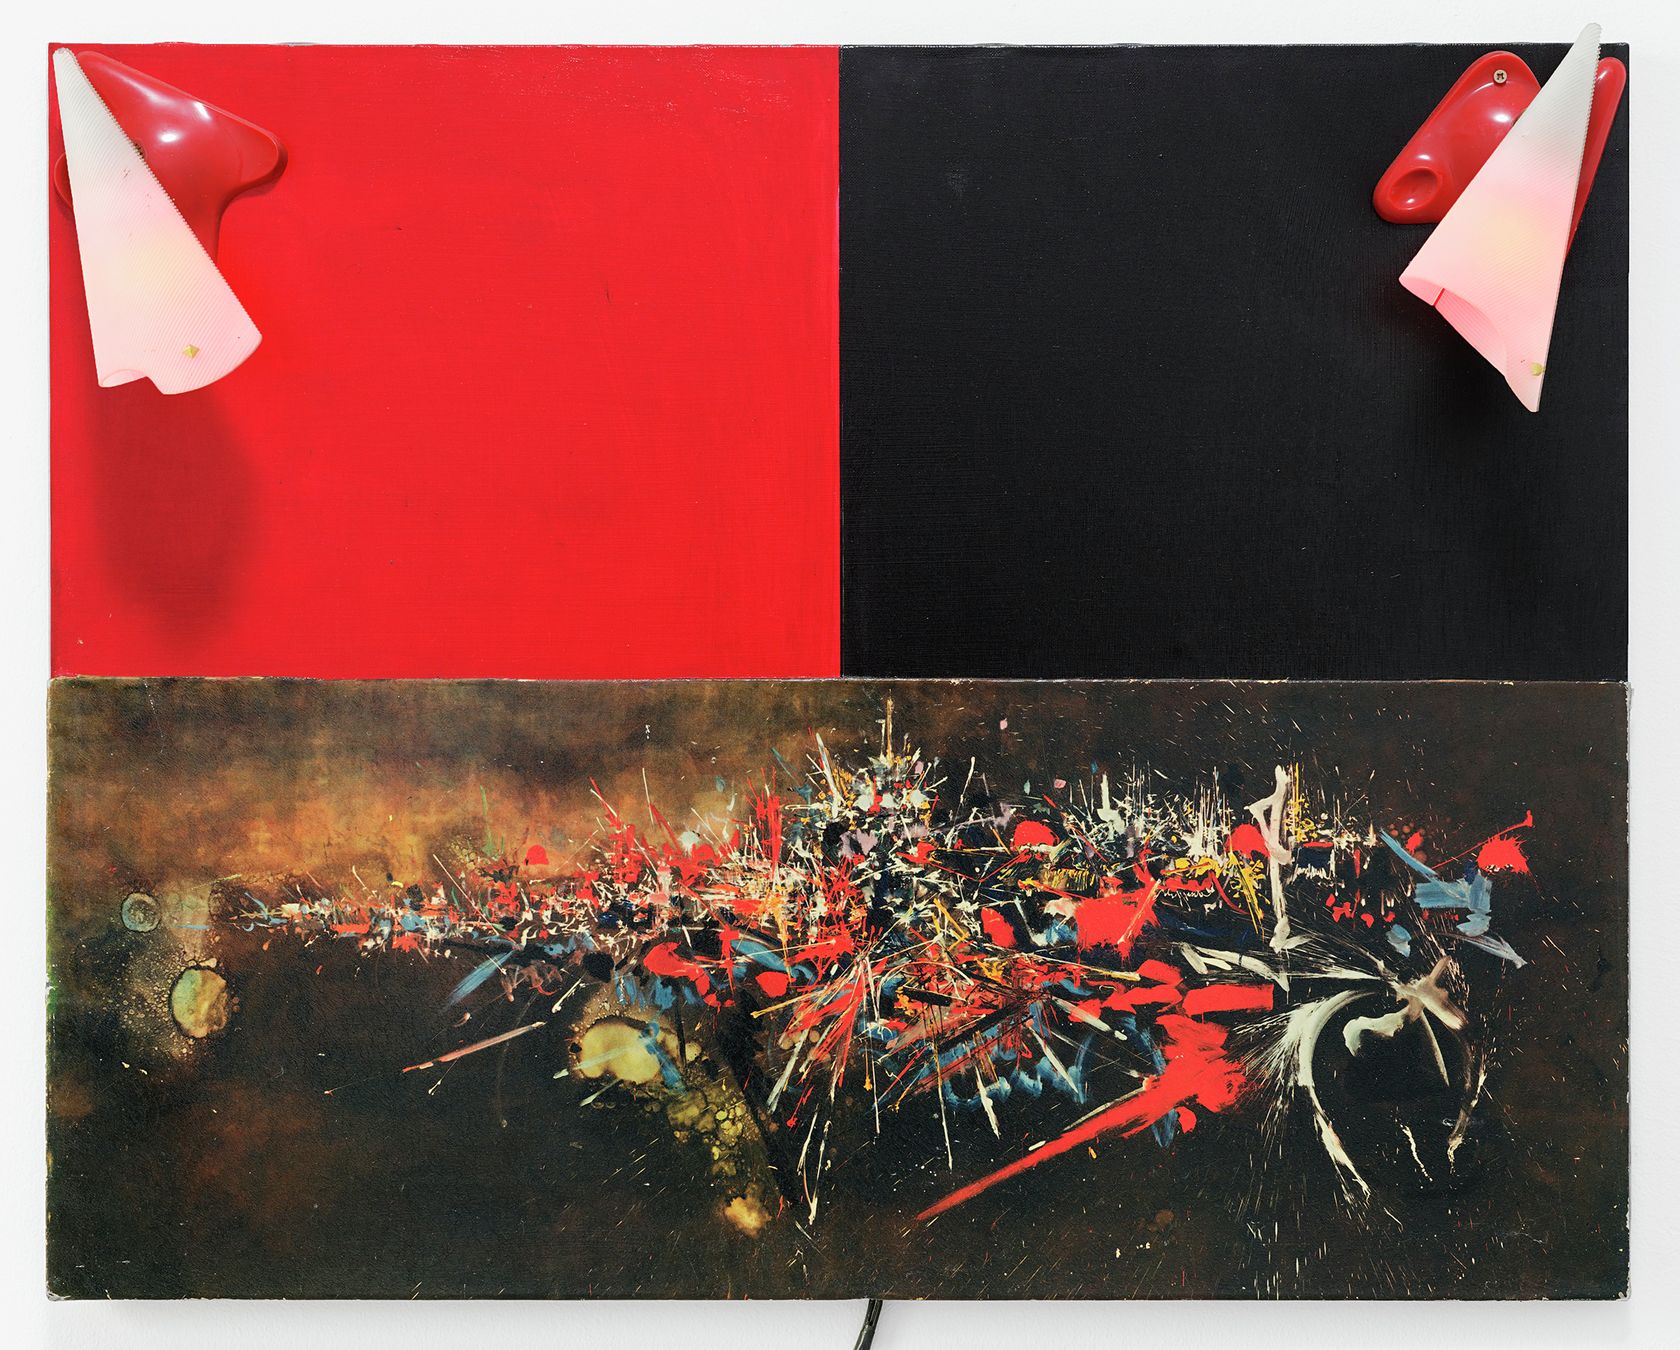 Présence Panchounette, Mathieu vu, 1980 Reproduction et acrylique sur toile, appliques73 × 92 × 24 cm / 28 6/8 × 36 2/8 × 9 1/2 in.